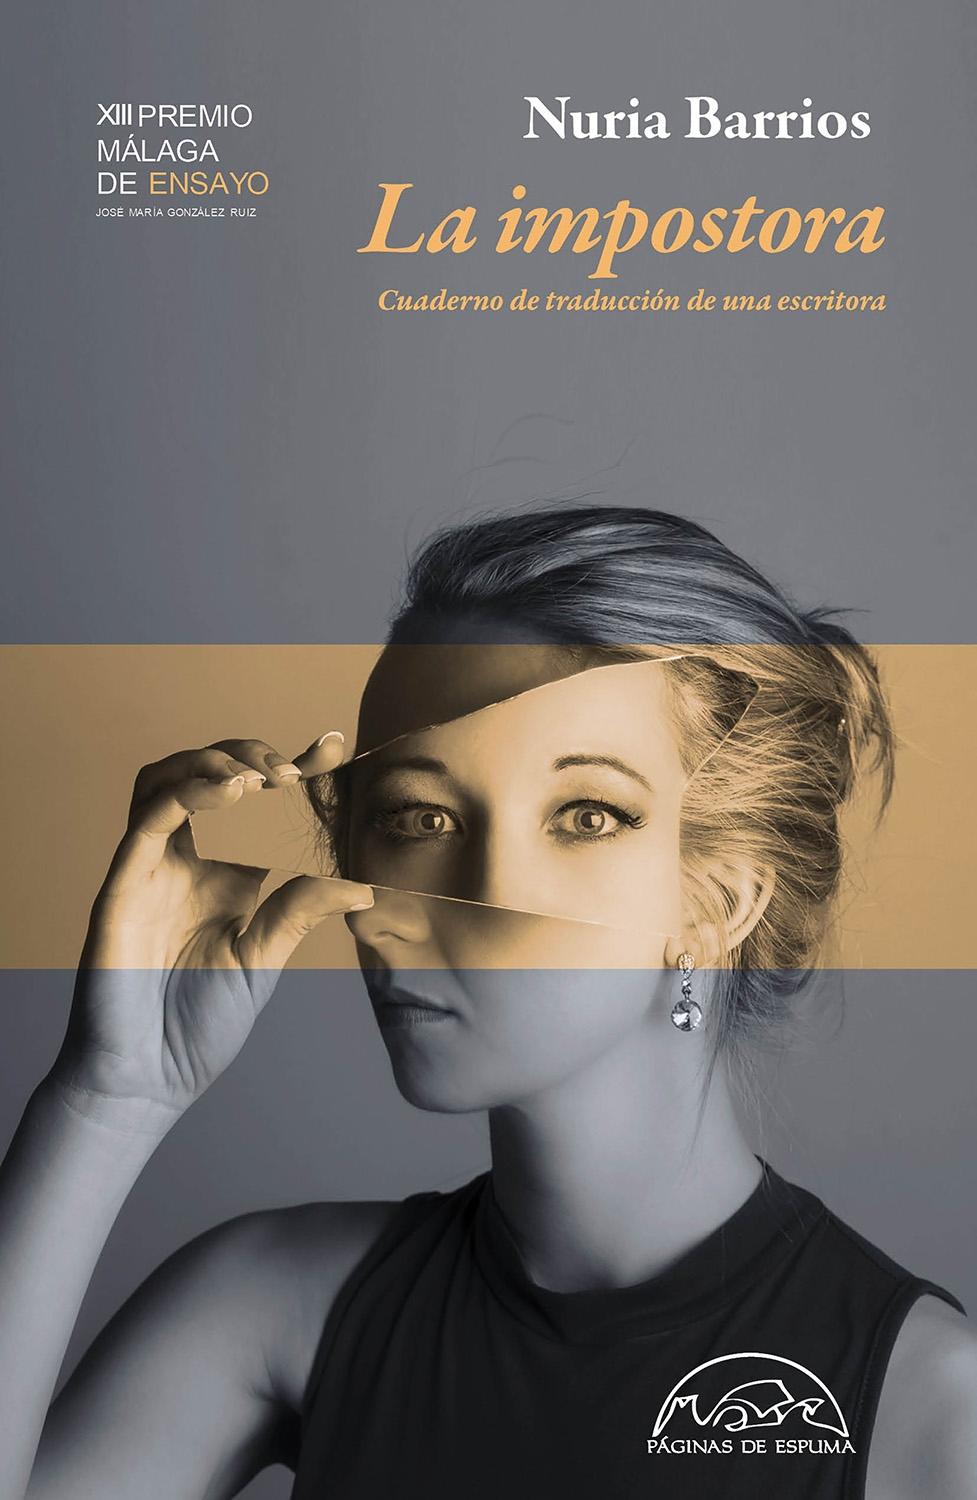 La impostora "Cuaderno de traducción de una escritora | XIII Premio Málaga de Ensayo"